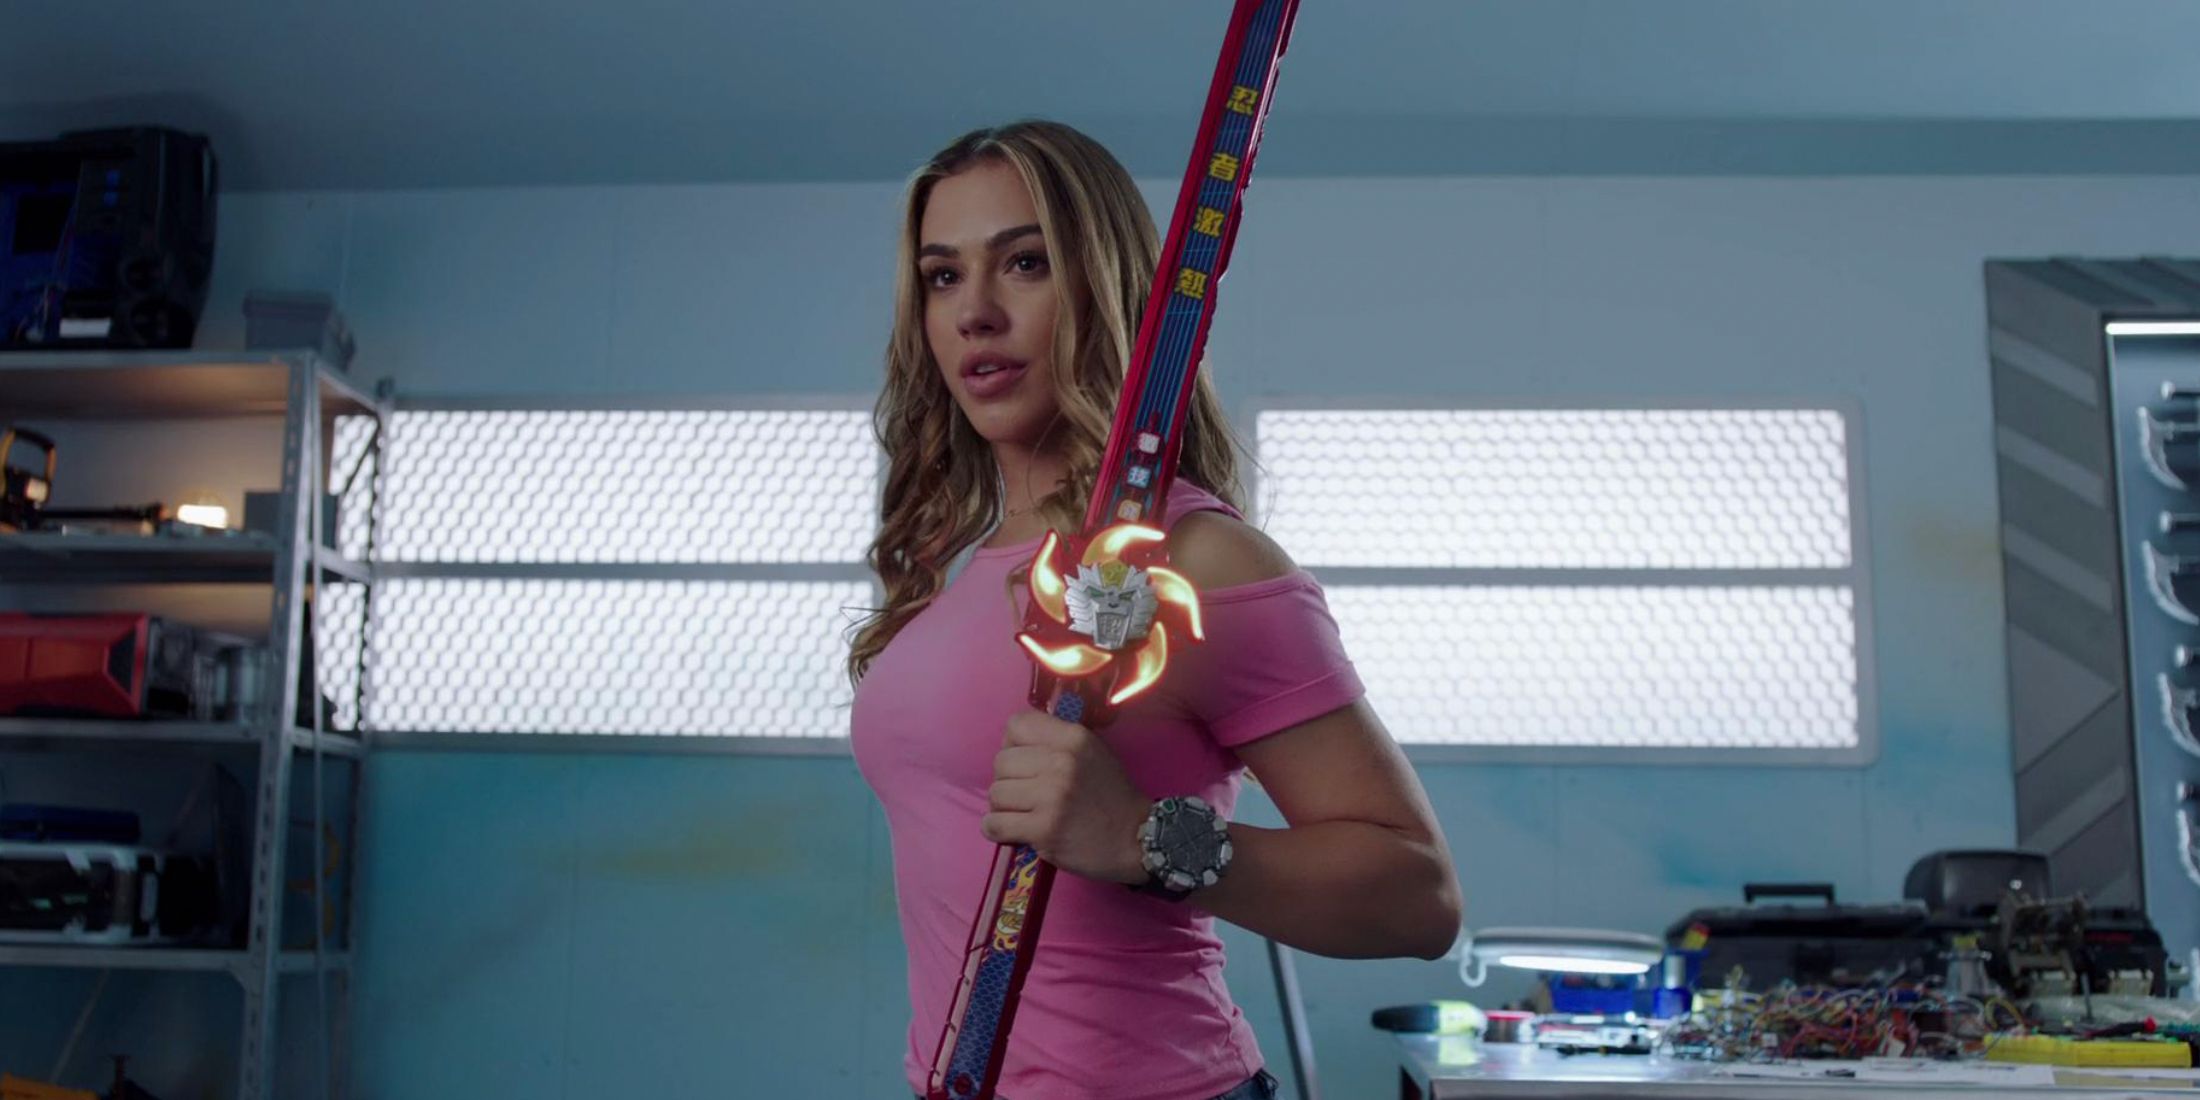 Sarah holding her sword in Power Rangers Ninja Steel